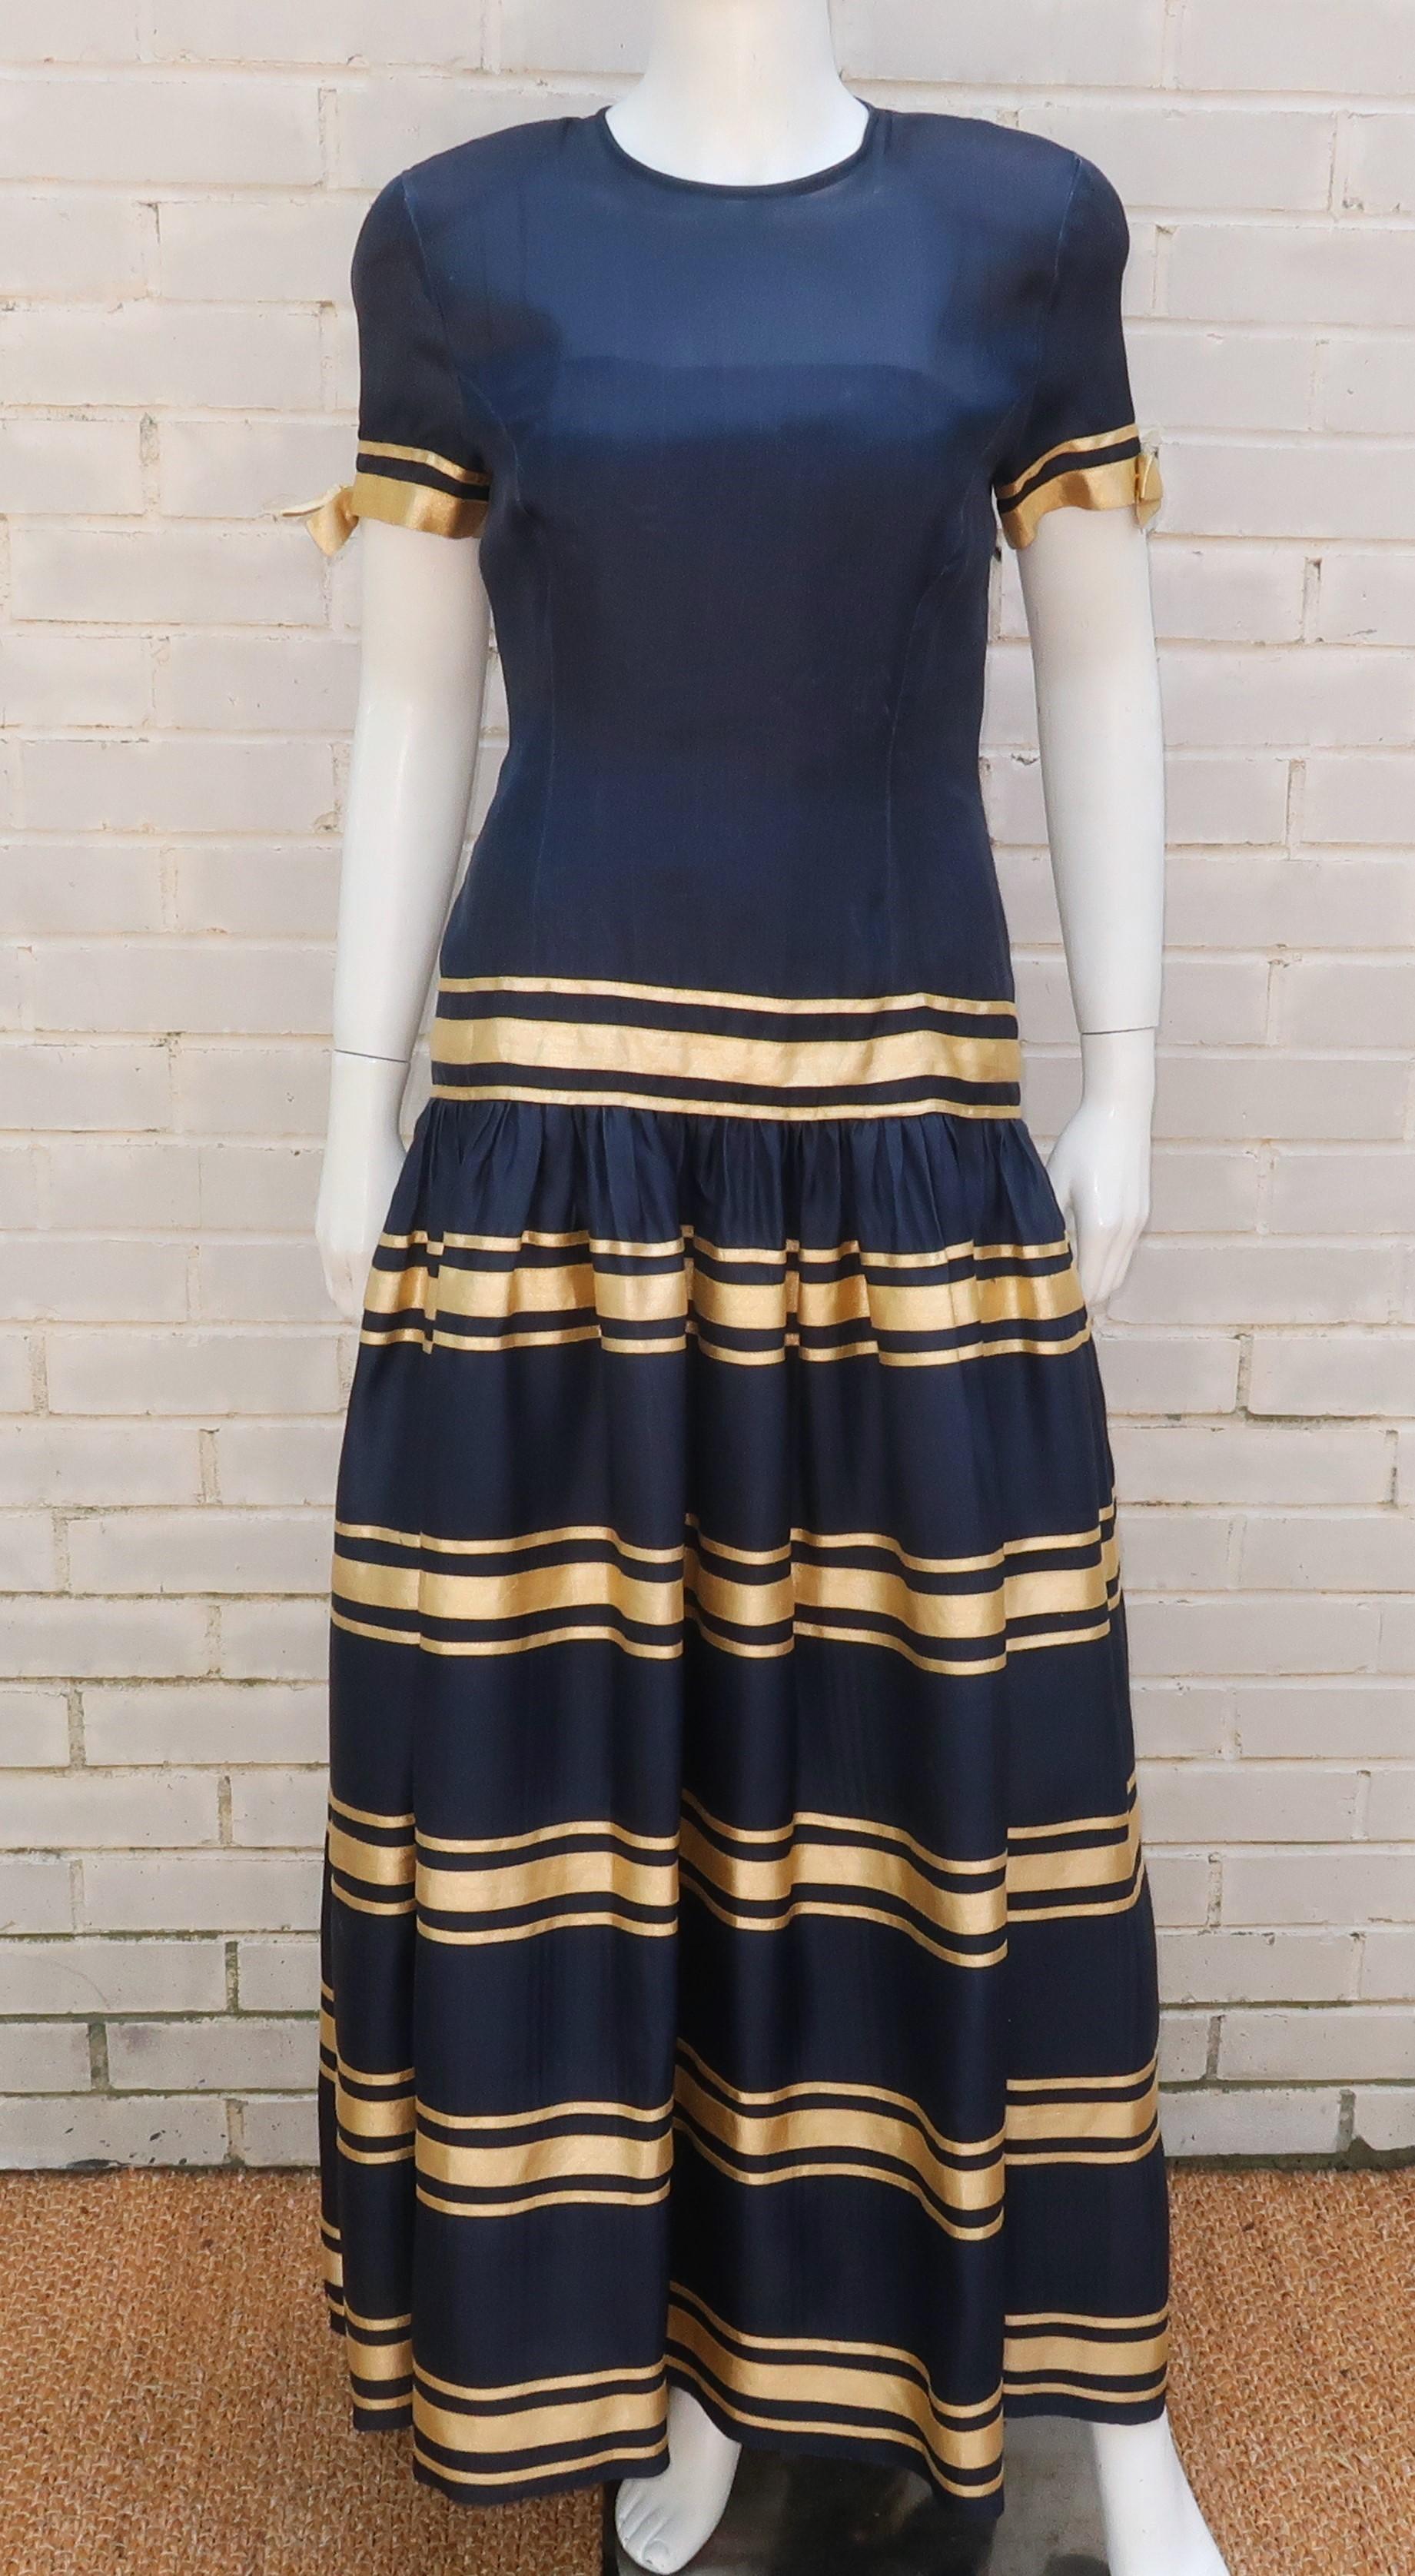 robe de soirée Albert Nipon des années 1980 en organza de soie bleu marine avec des bandes d'or accentuées par des nœuds.  Le design ultra féminin se ferme à l'aide de fermetures éclair et de crochets dans le dos, avec un corsage semi-transparent